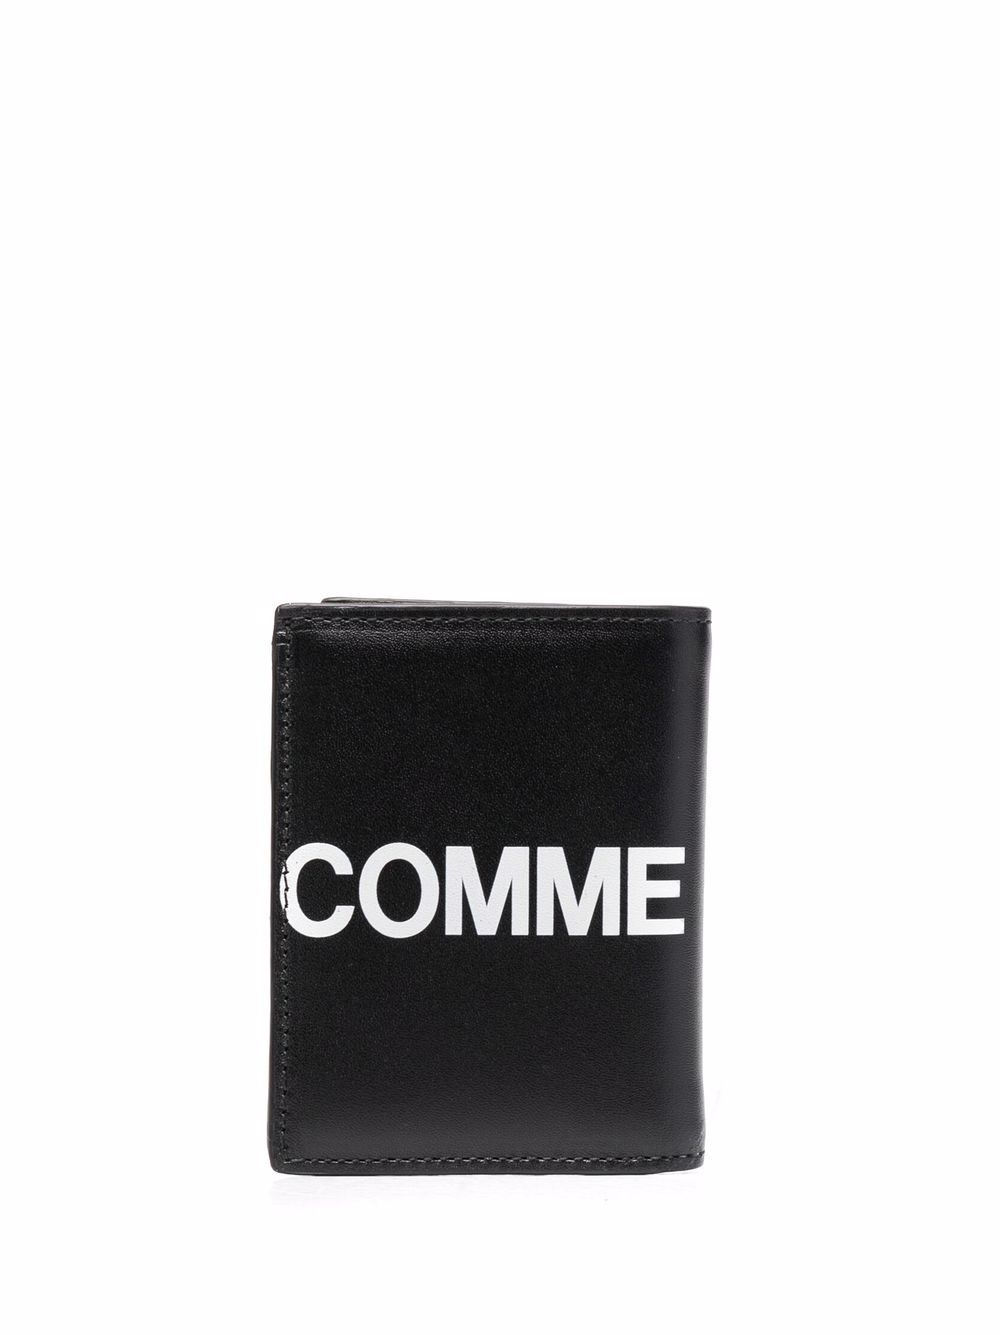 фото Comme des garçons wallet большой кошелек с логотипом